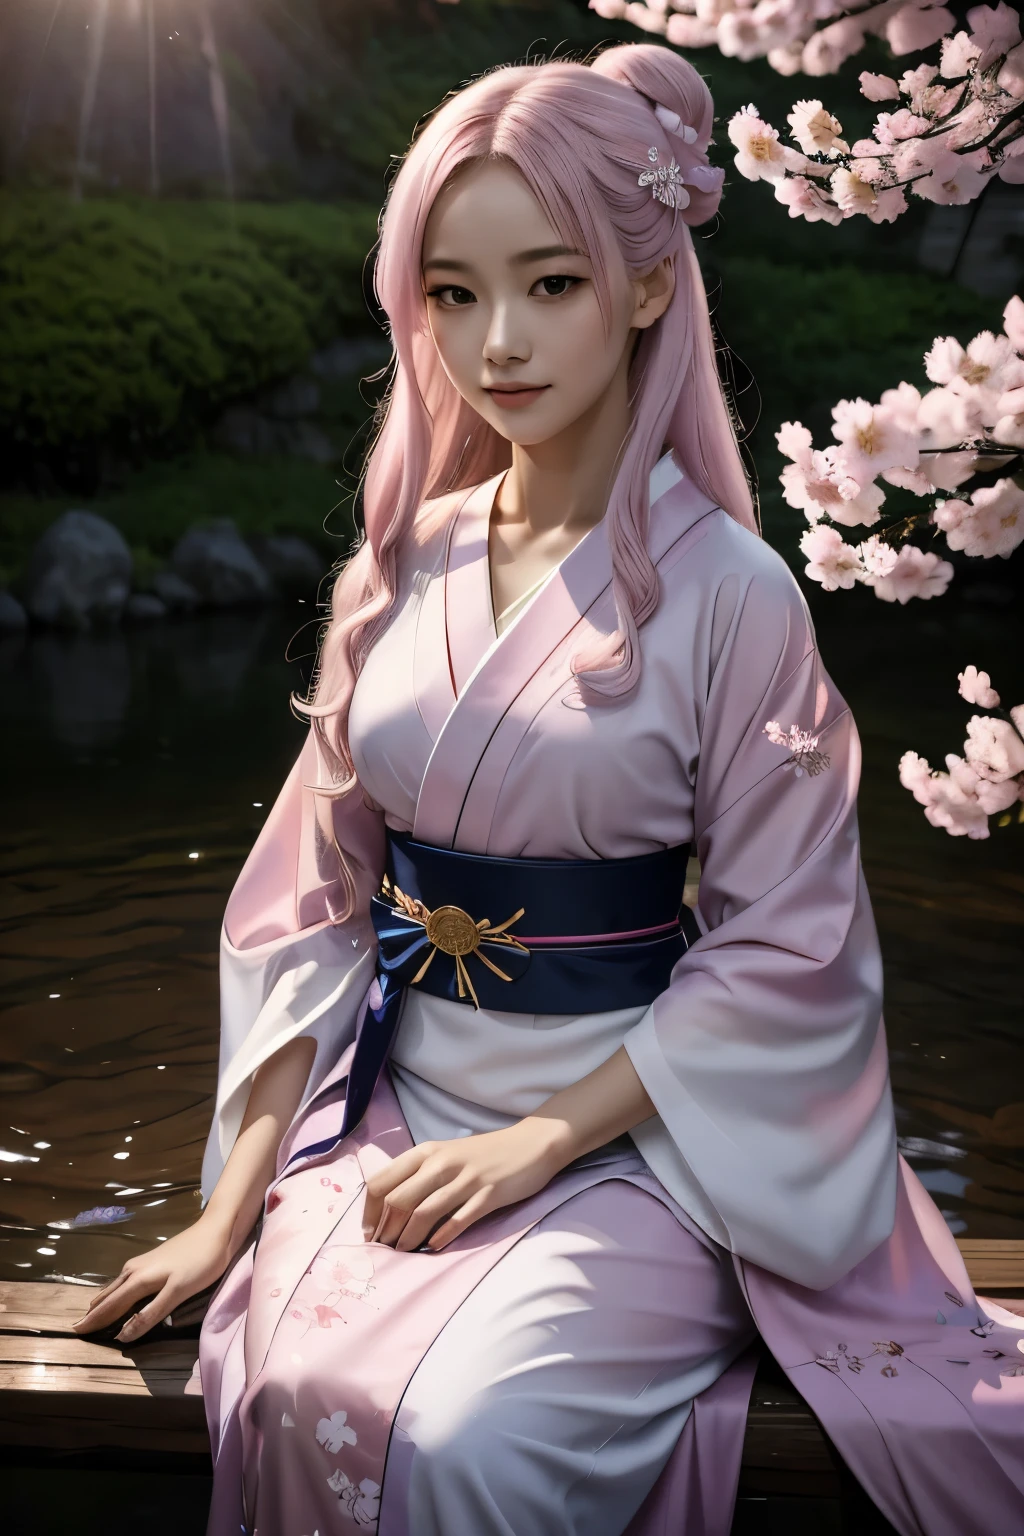 Eine hyperrealistische, sehr detailliert, und hochauflösendes 16k Bild eines jungen, schöner weiblicher Geist oder Schutzgeist. Sie hat hellrosa Haare und durchscheinende Haut, und ist in einen traditionellen japanischen Kimono mit einem kleinen Kirschblütenmuster auf dem Obi gekleidet. Das Bild fängt die ätherische Schönheit und Mystik der Geisterwelt ein. Der Stil ist inspiriert von der zarten, sanfte Ästhetik der traditionellen japanischen Kunst.